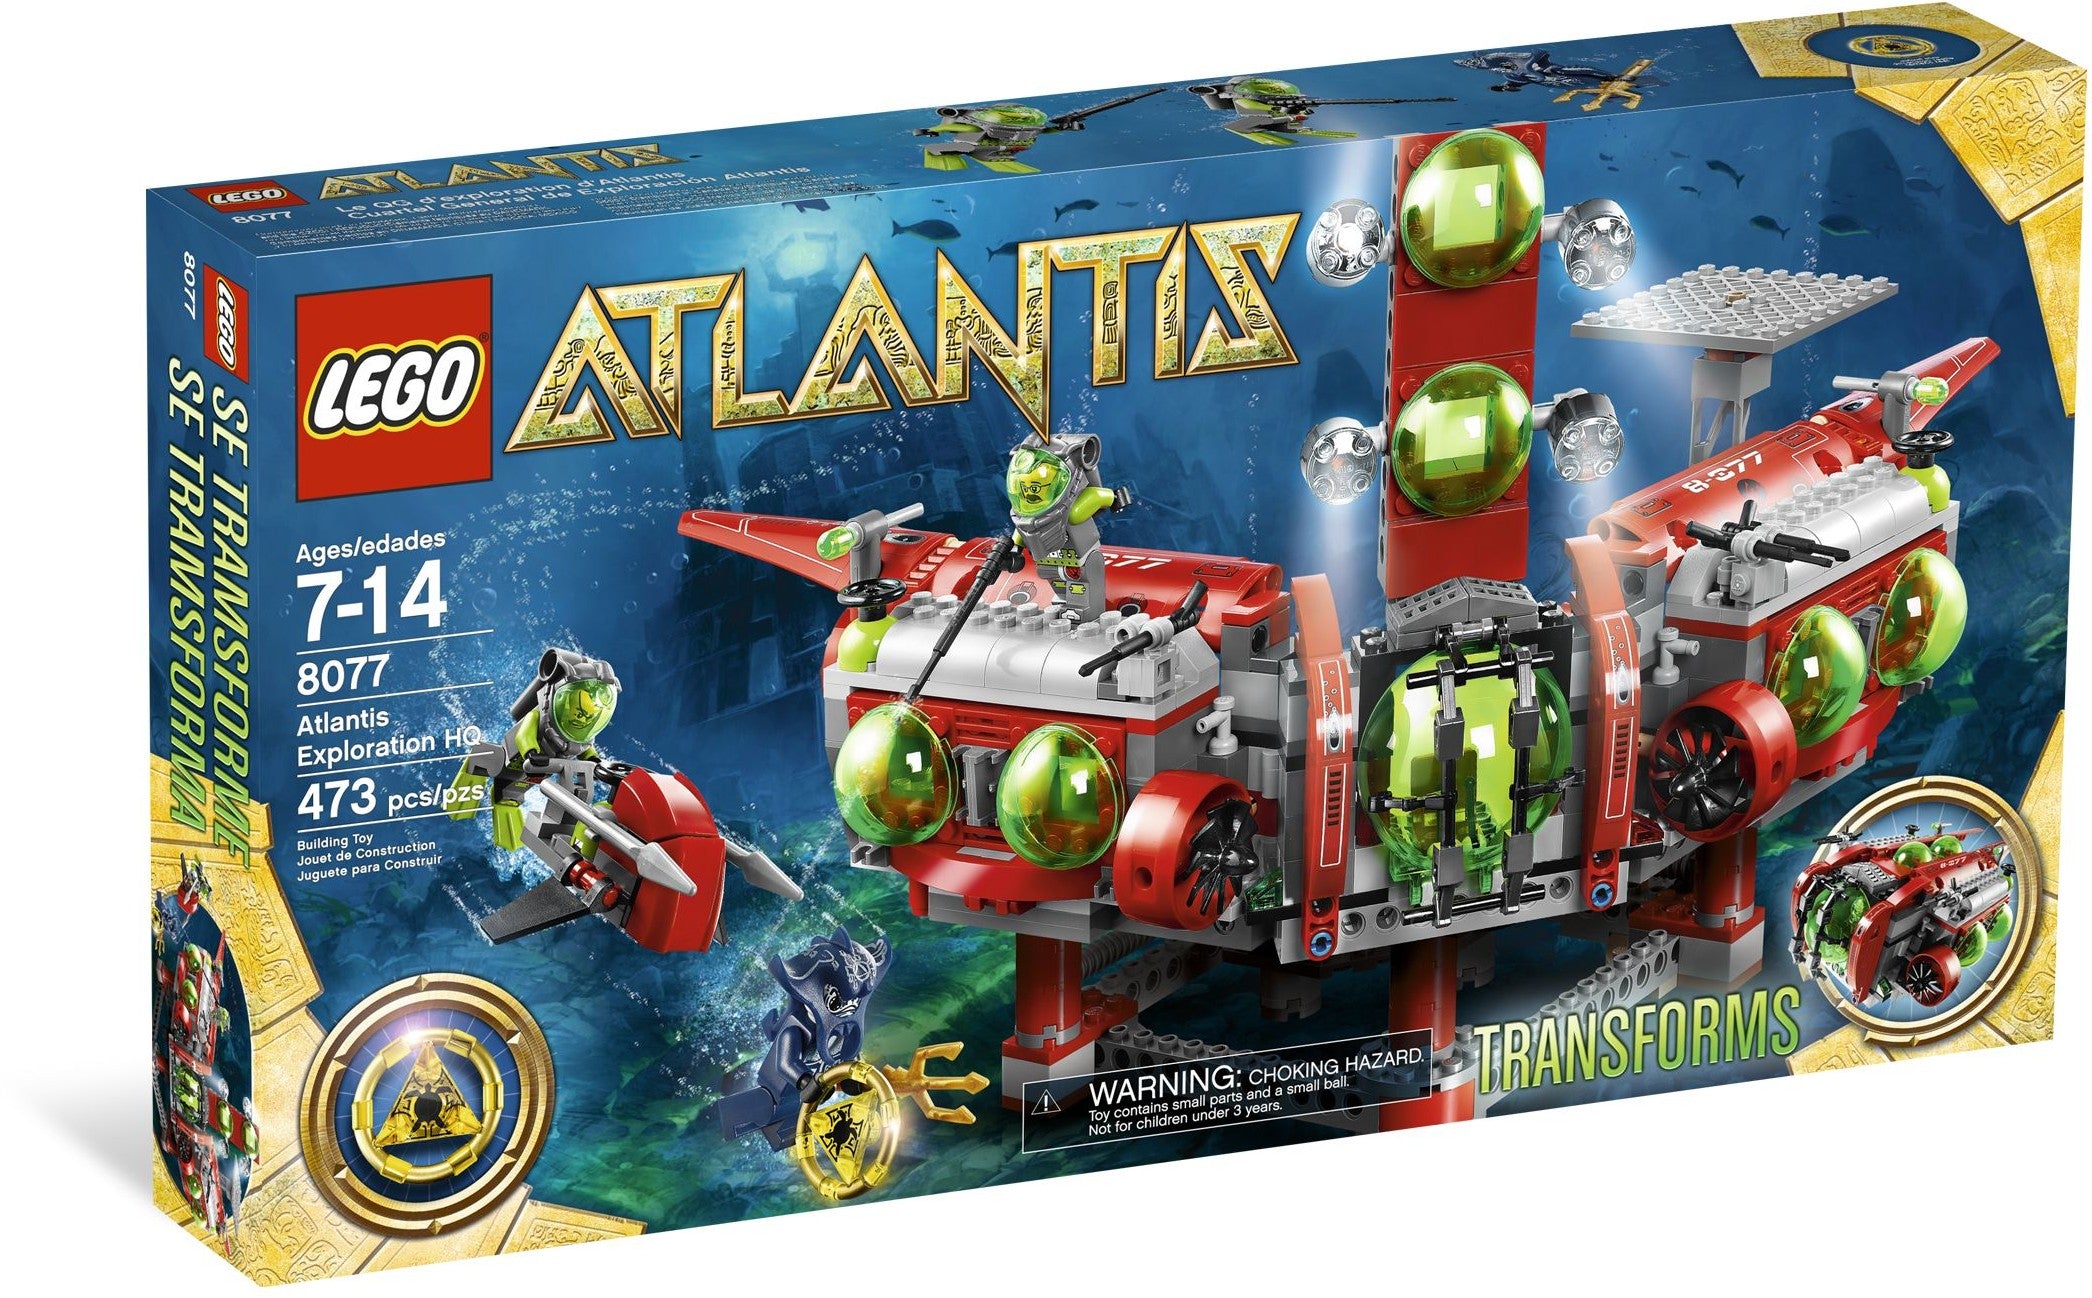 Lego Atlantis 8077 - Atlantis Exploration HQ